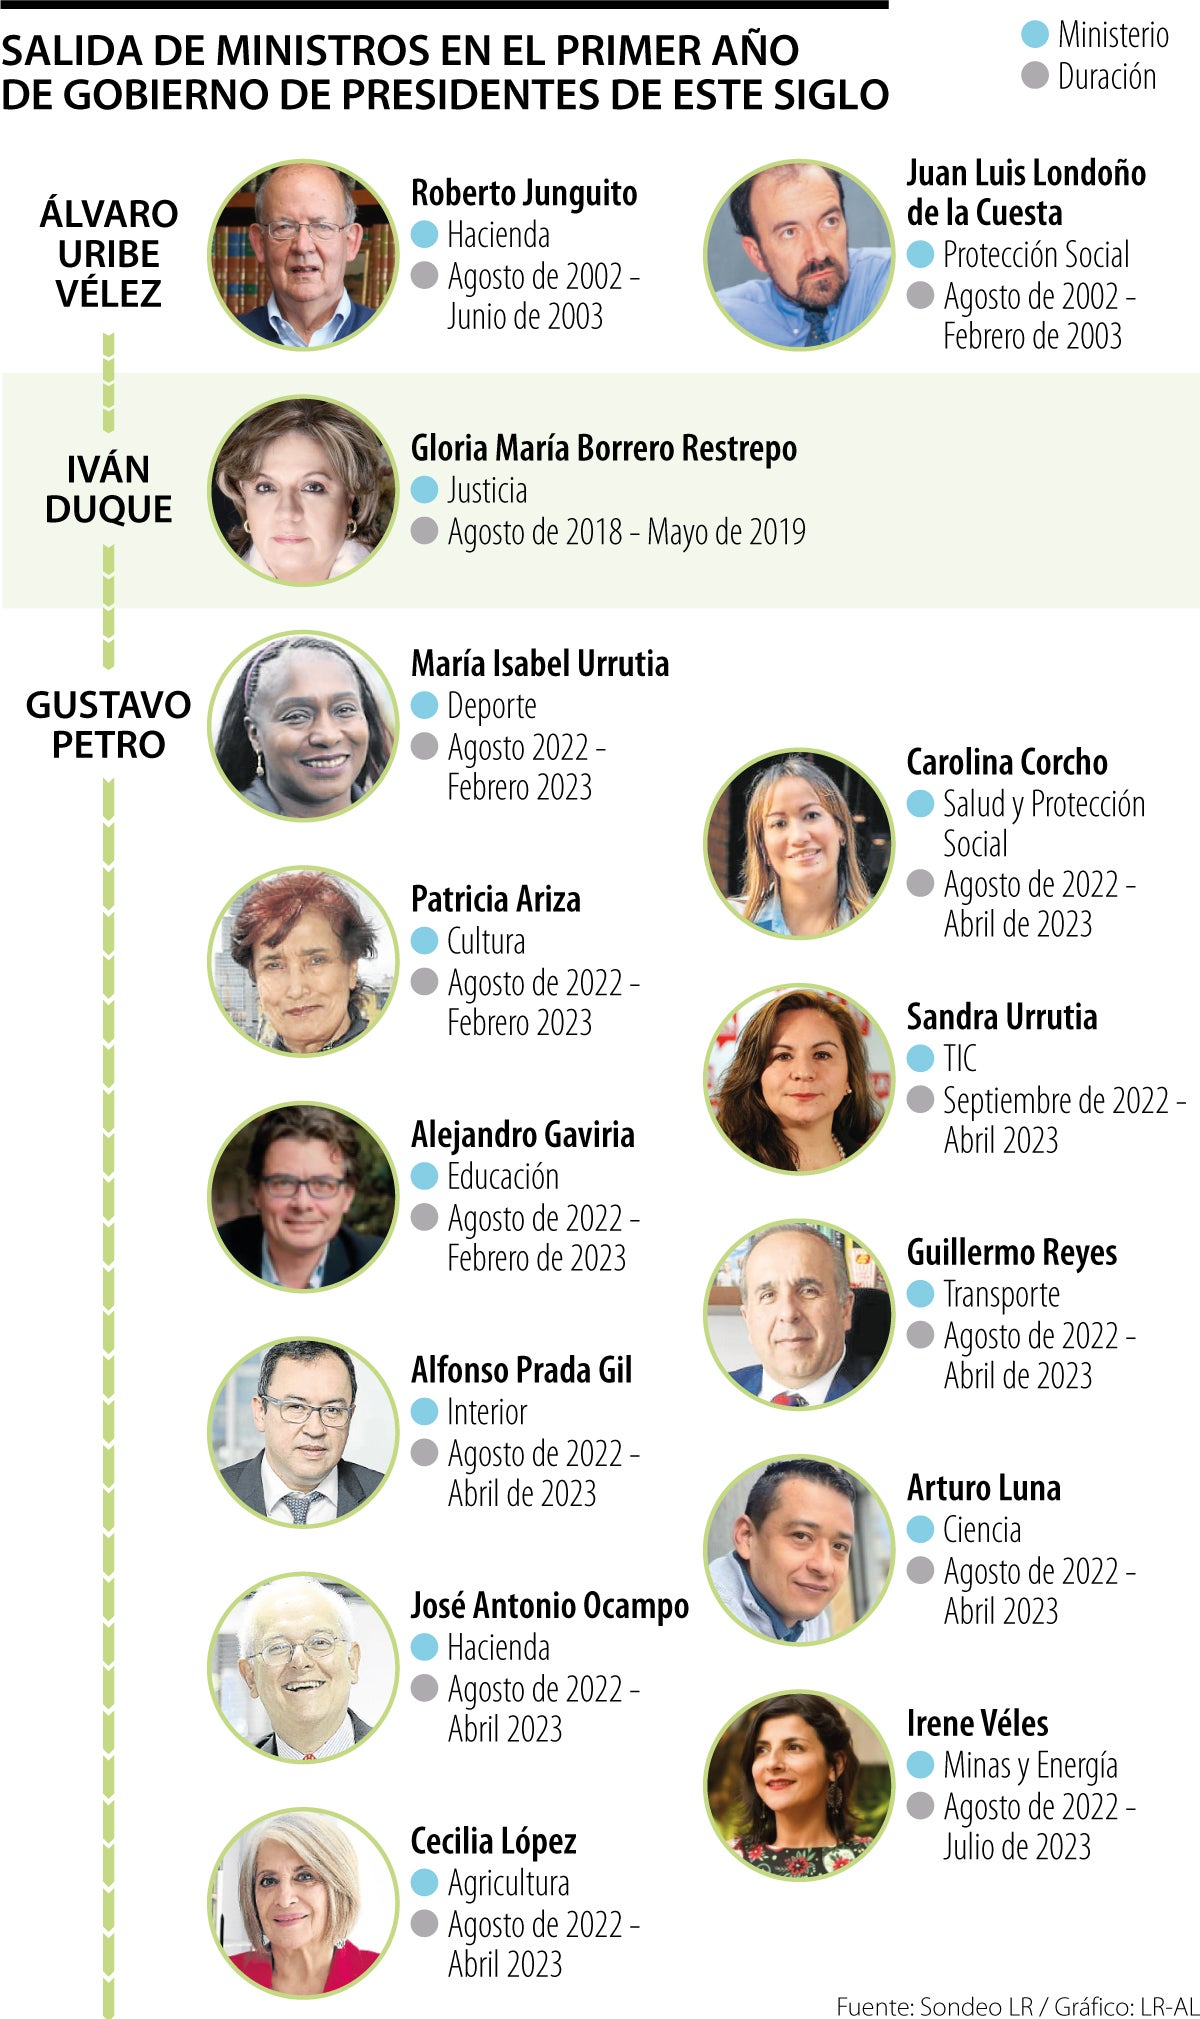 Gustavo Petro es el presidente que más ha sacado más ministros en su ...